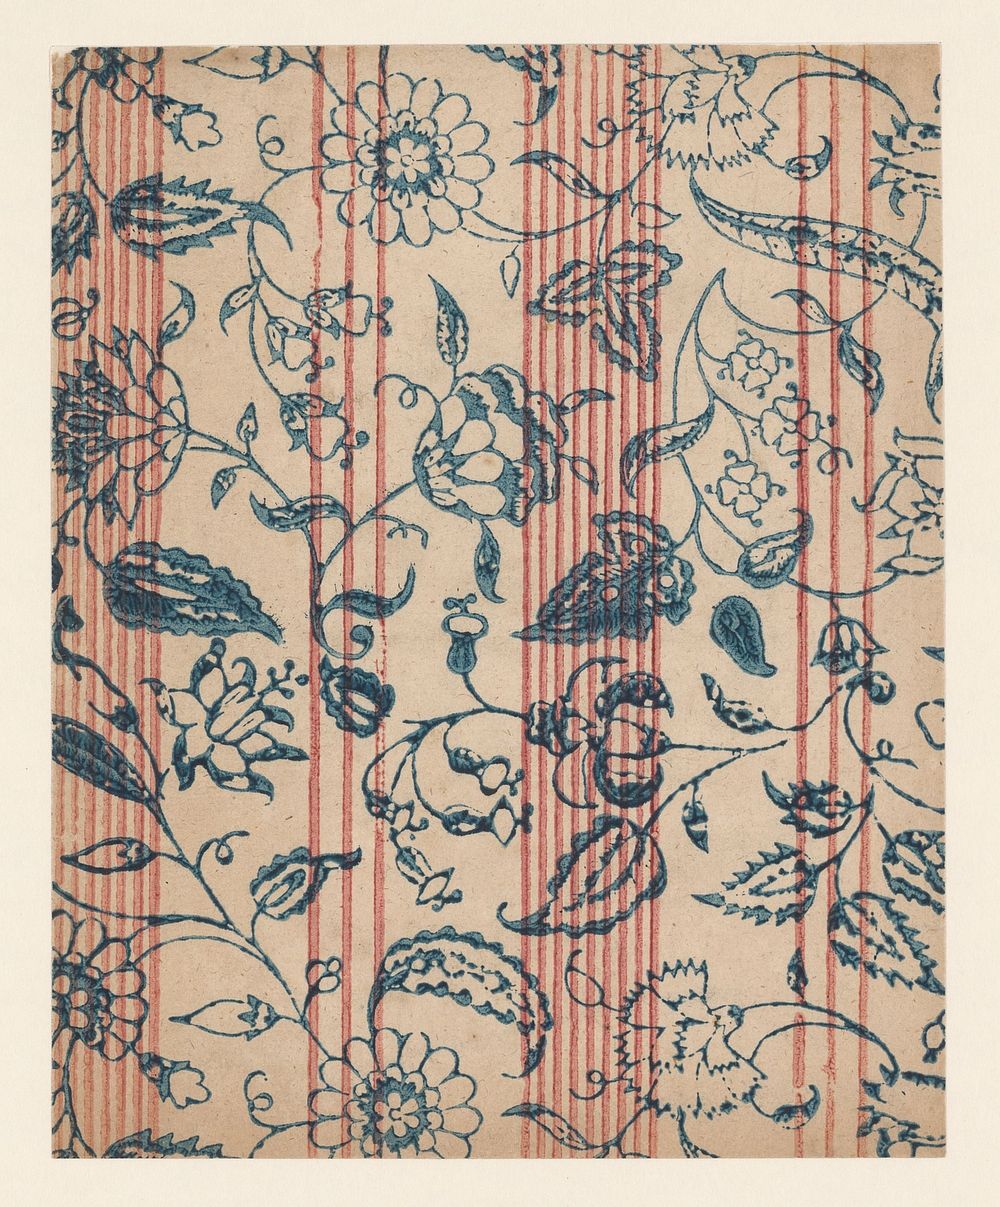 Blad met banenpatroon van bloemranken en lijnen (c. 1700 - c. 1850) by anonymous